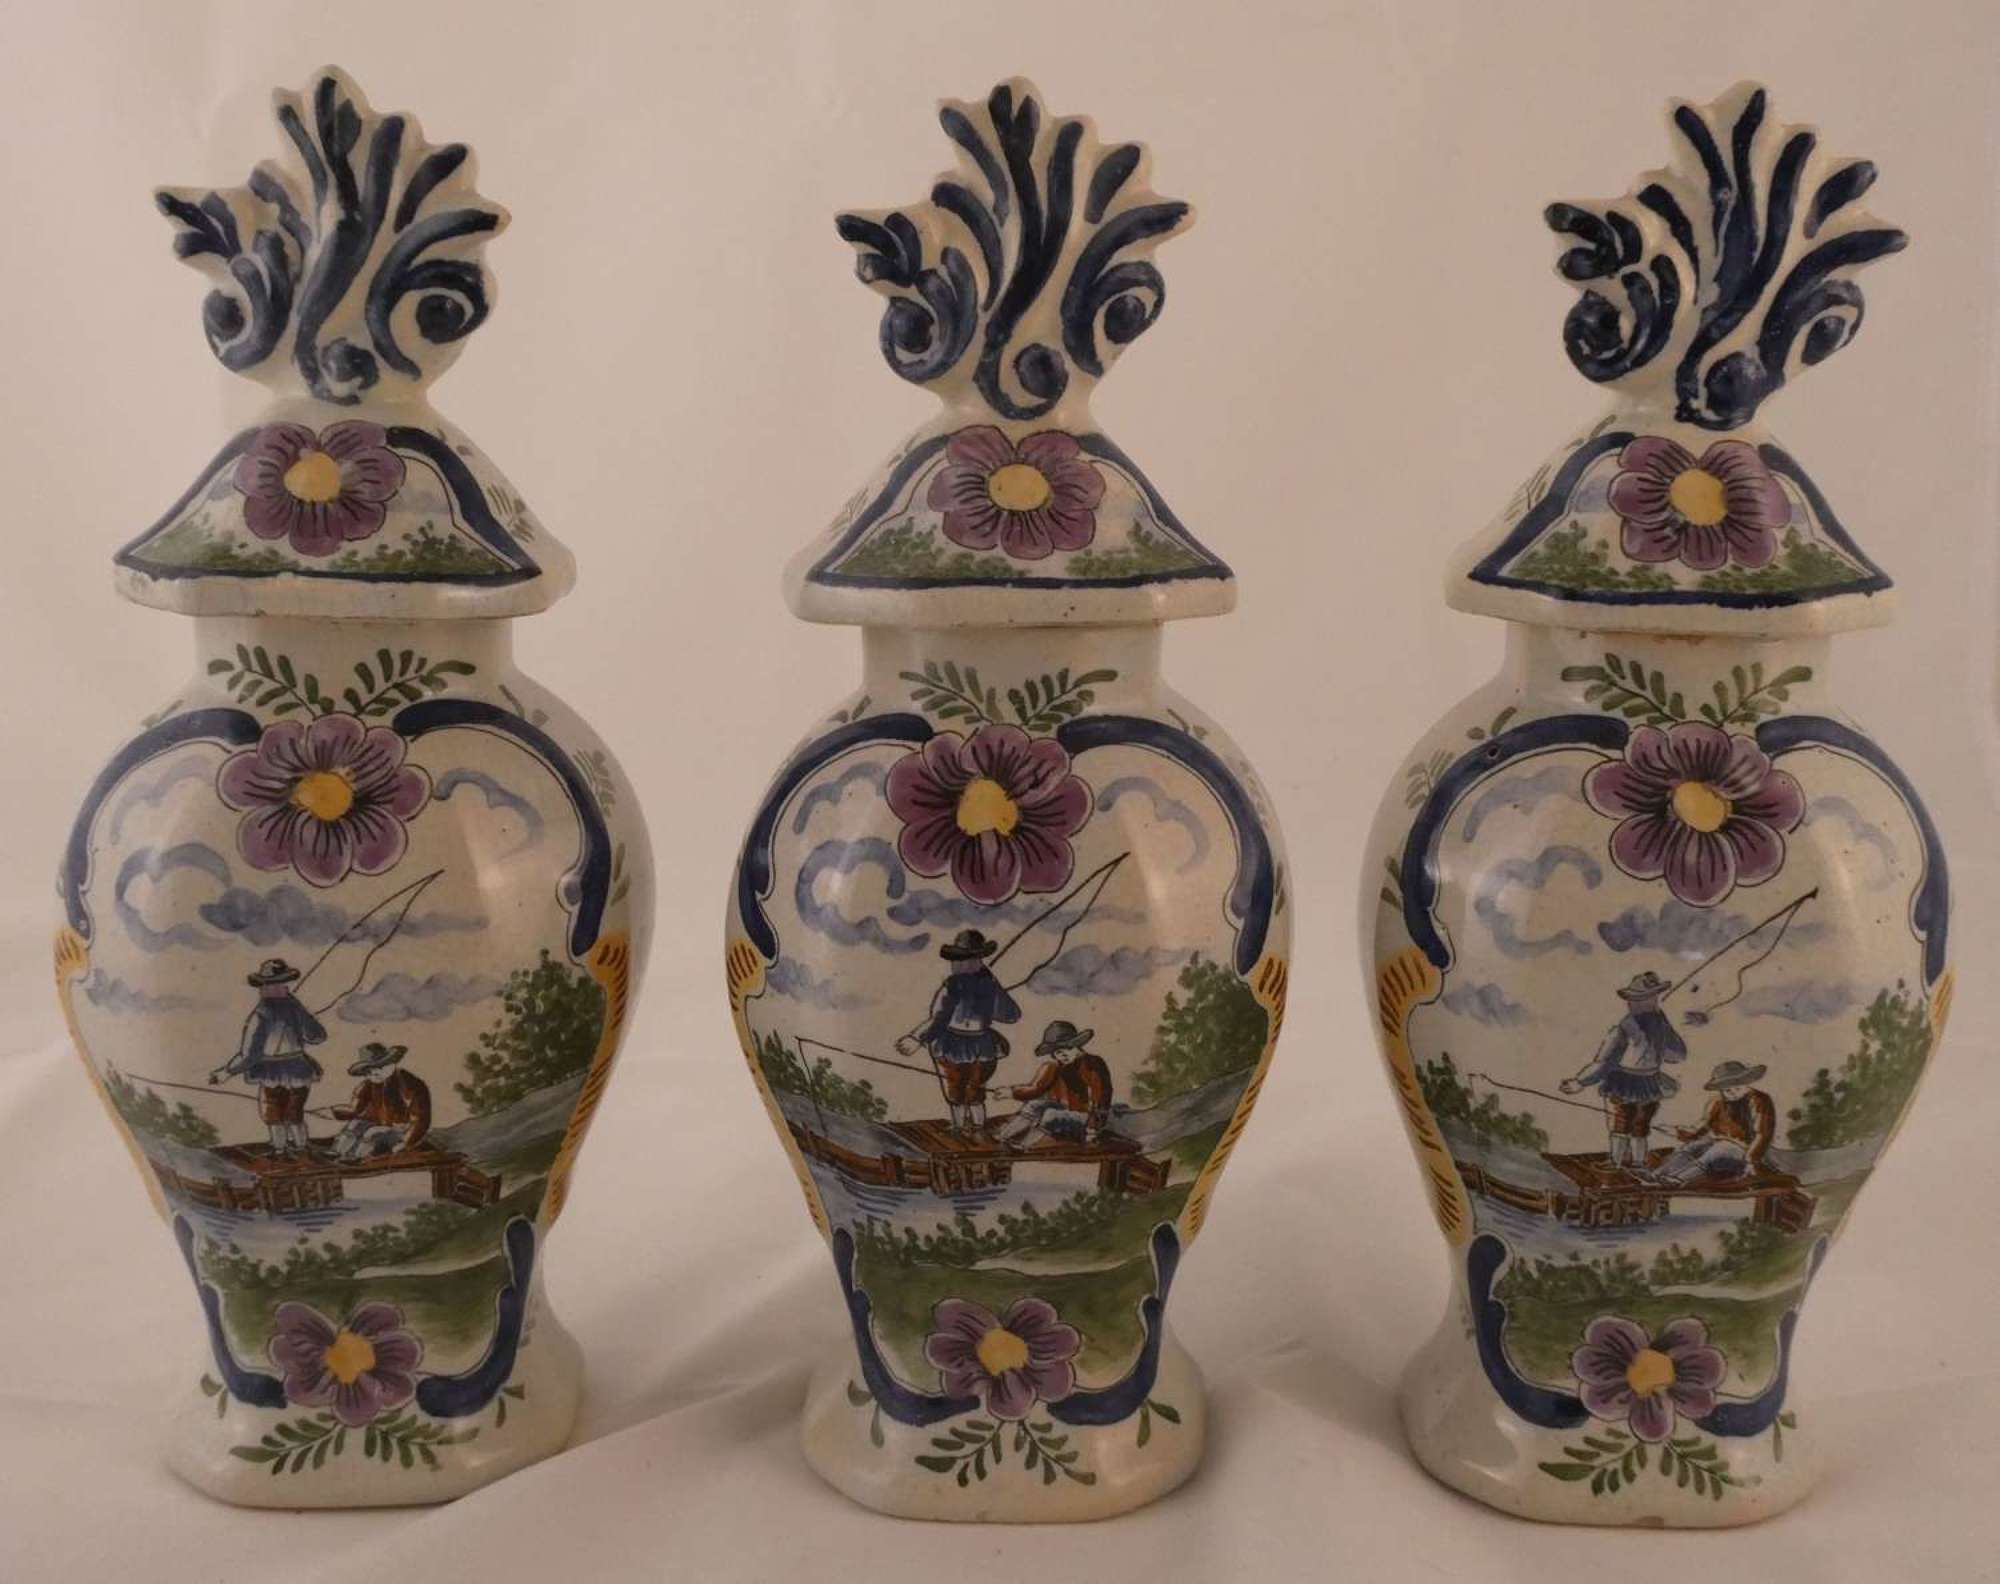 Garniture of Delft Vases